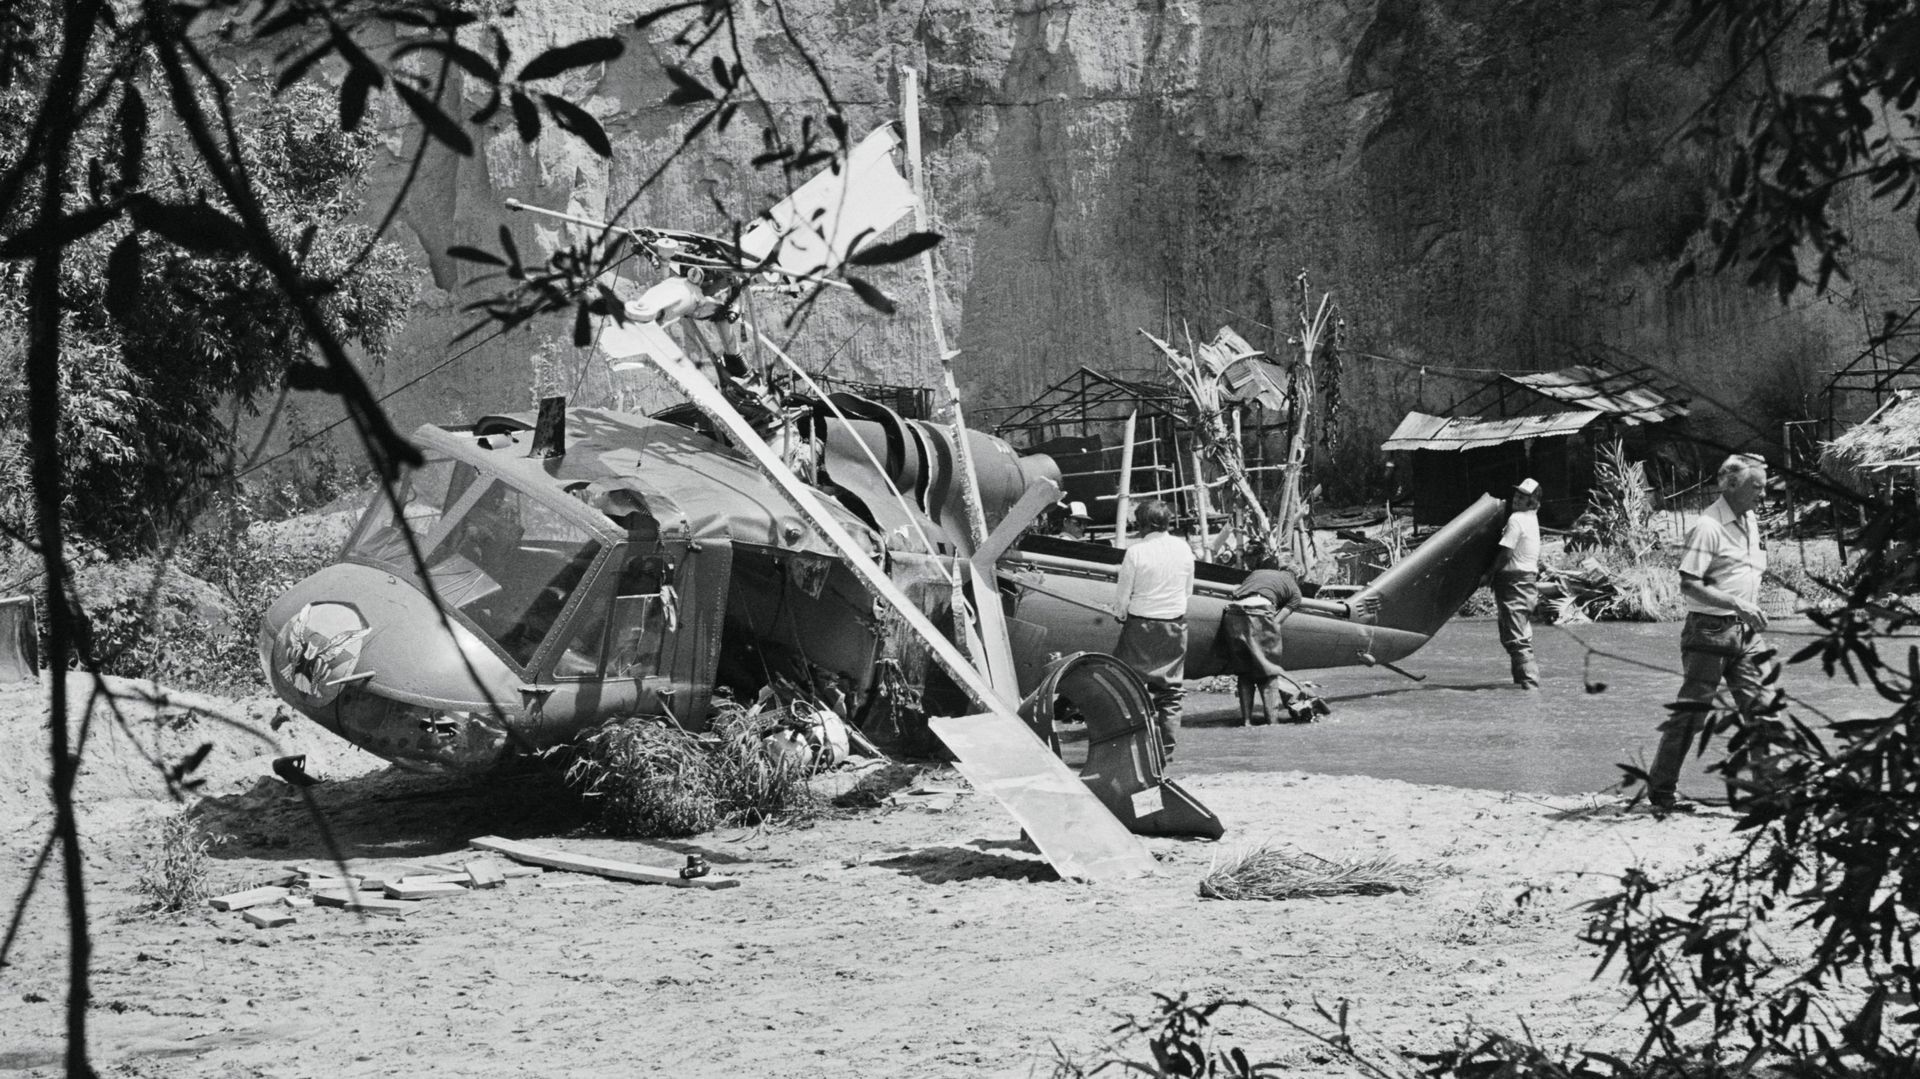 L'hélicoptère du film Twilight Zone, tombé accidentellement pendant le tournage